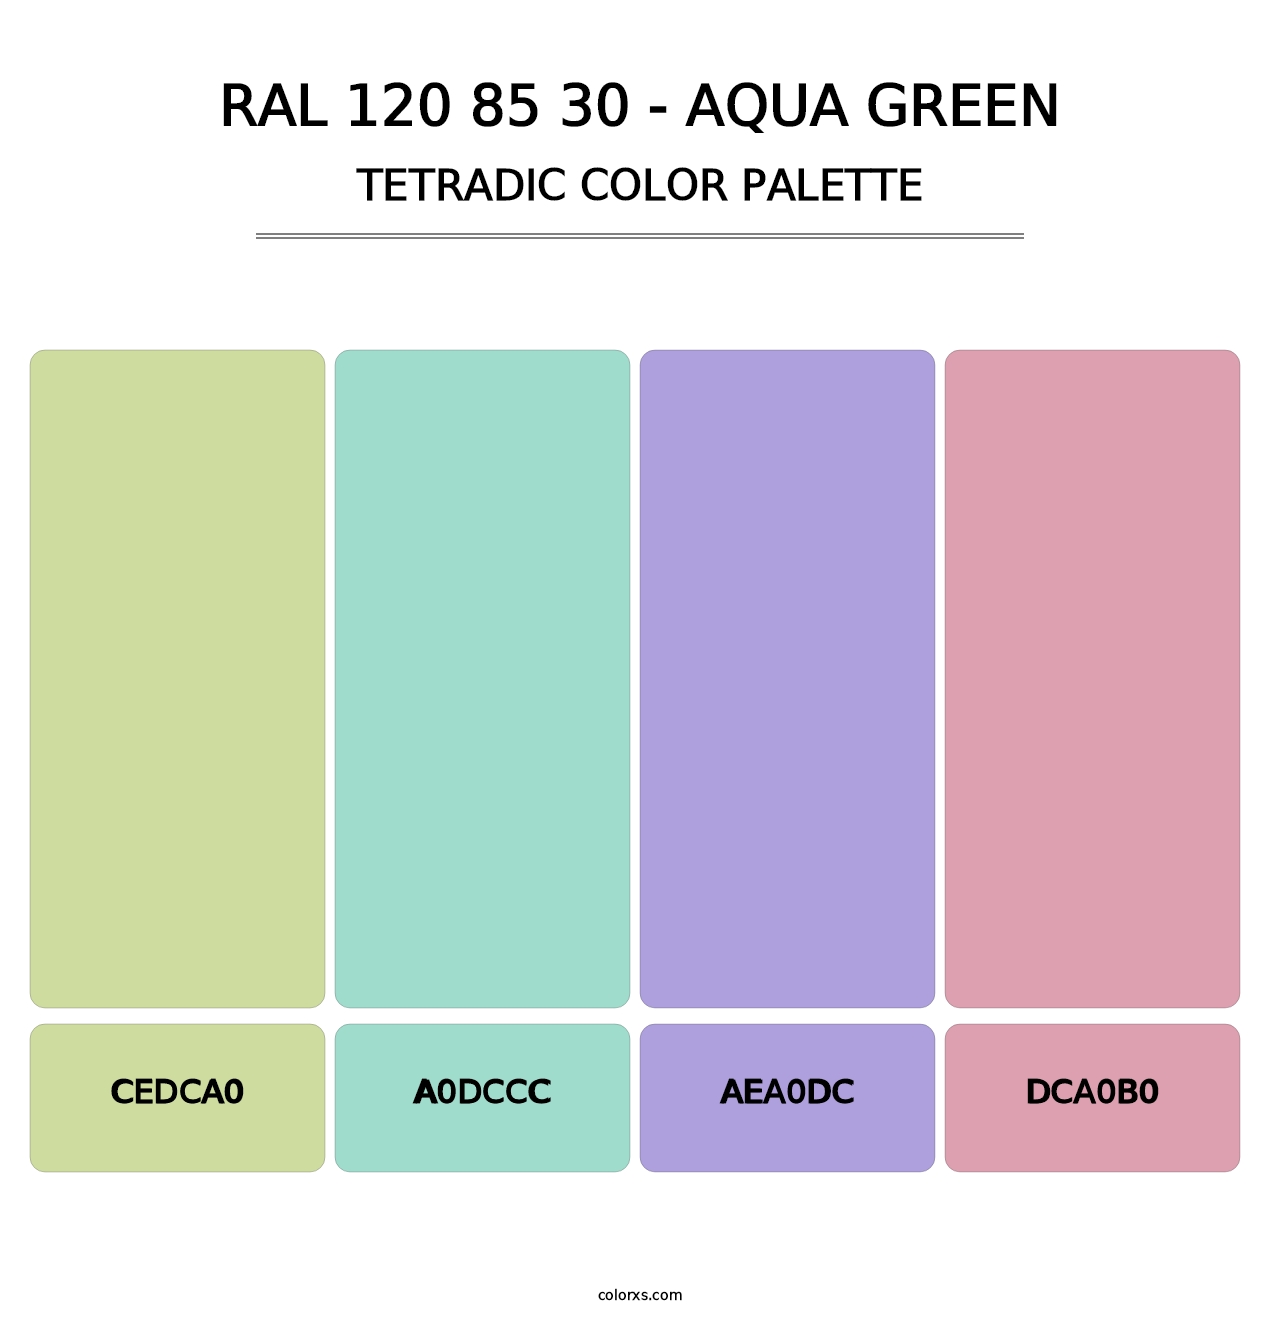 RAL 120 85 30 - Aqua Green - Tetradic Color Palette